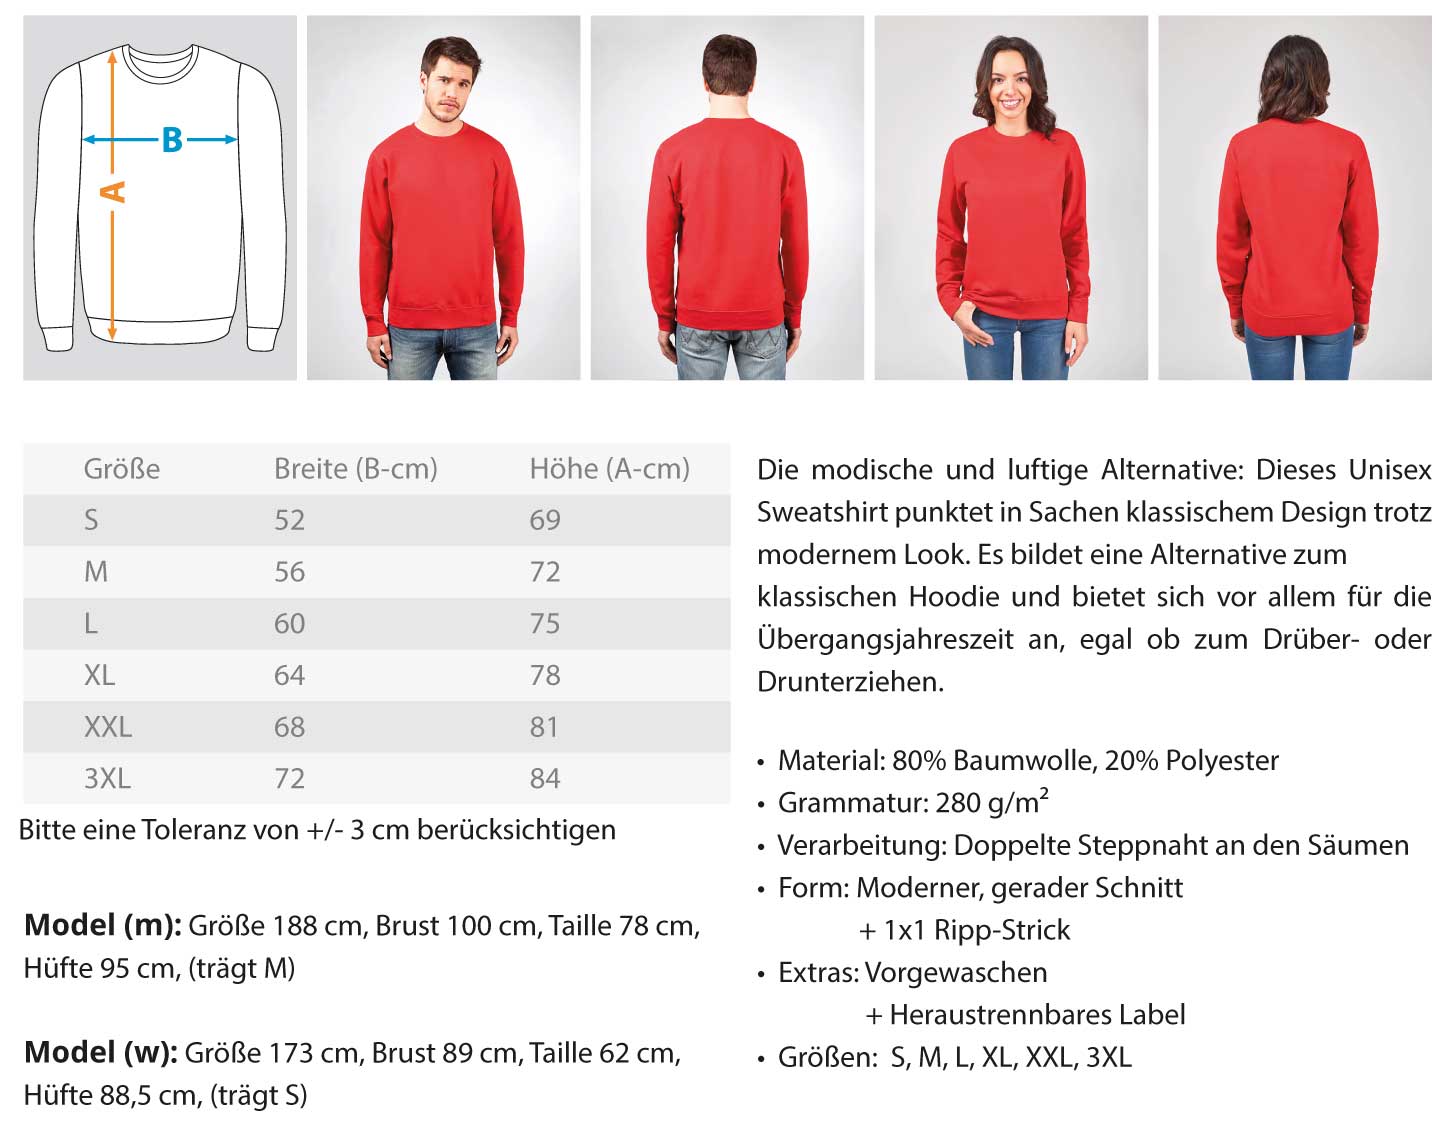 Scaffolder / Gerüstbauer Stay Wild   - Unisex Pullover €32.95 Gerüstbauer - Shop >>